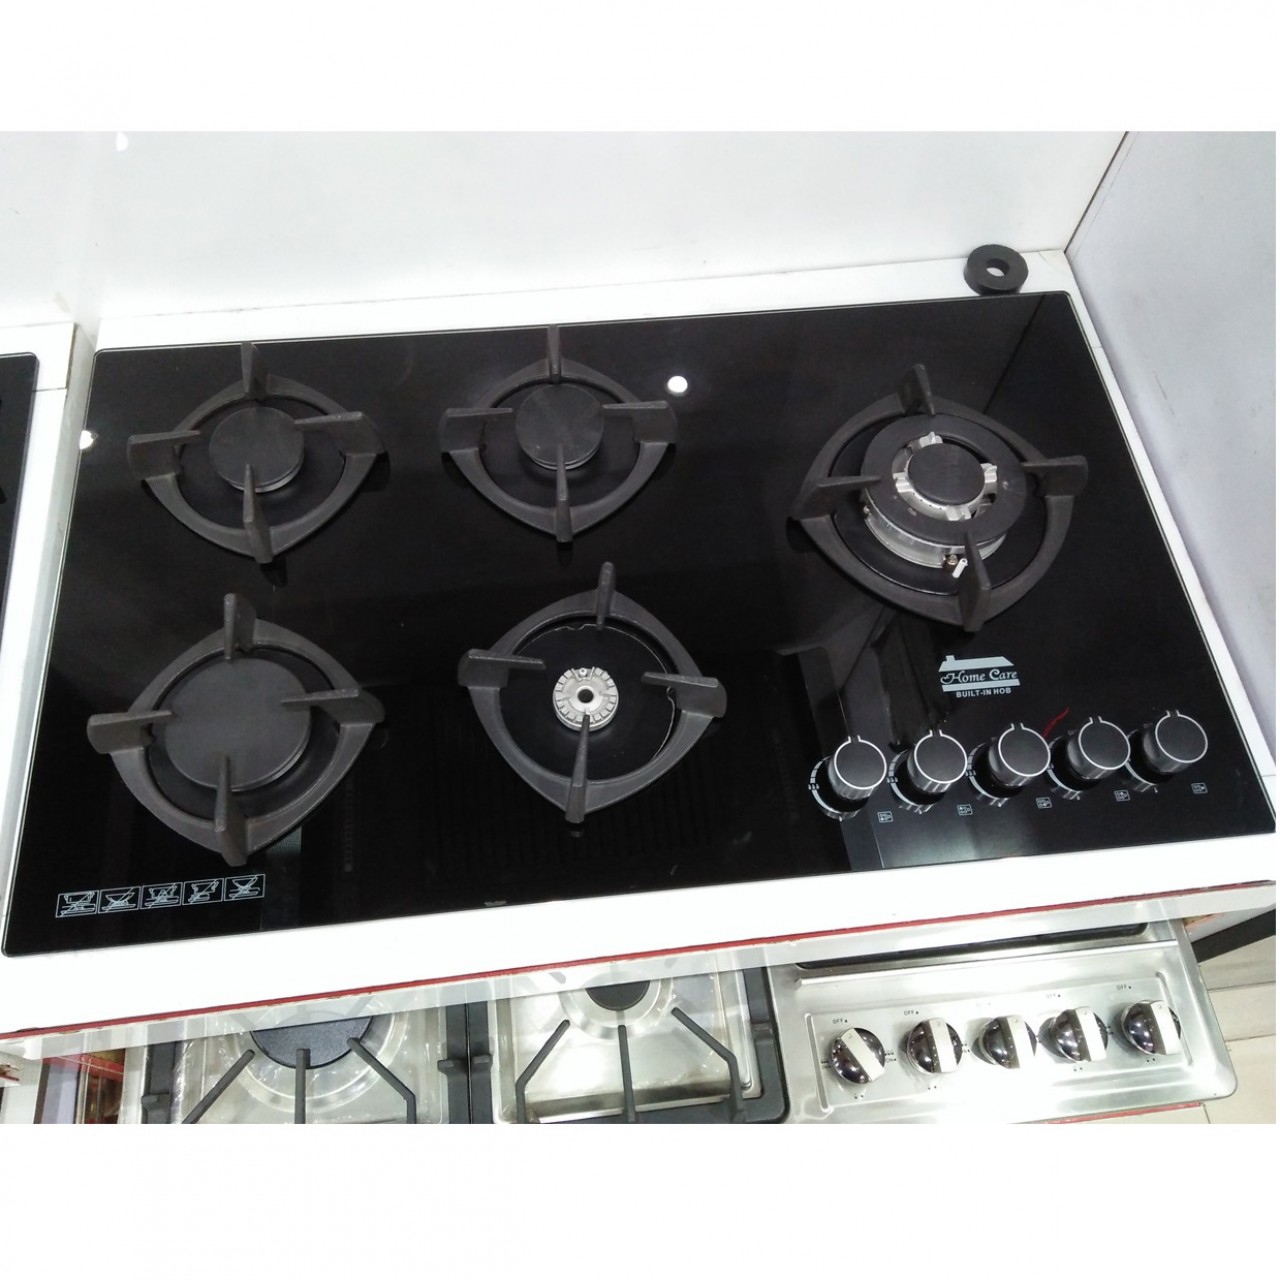 Glass Body 5 Burner Gas Stove - Kitchen Appliances